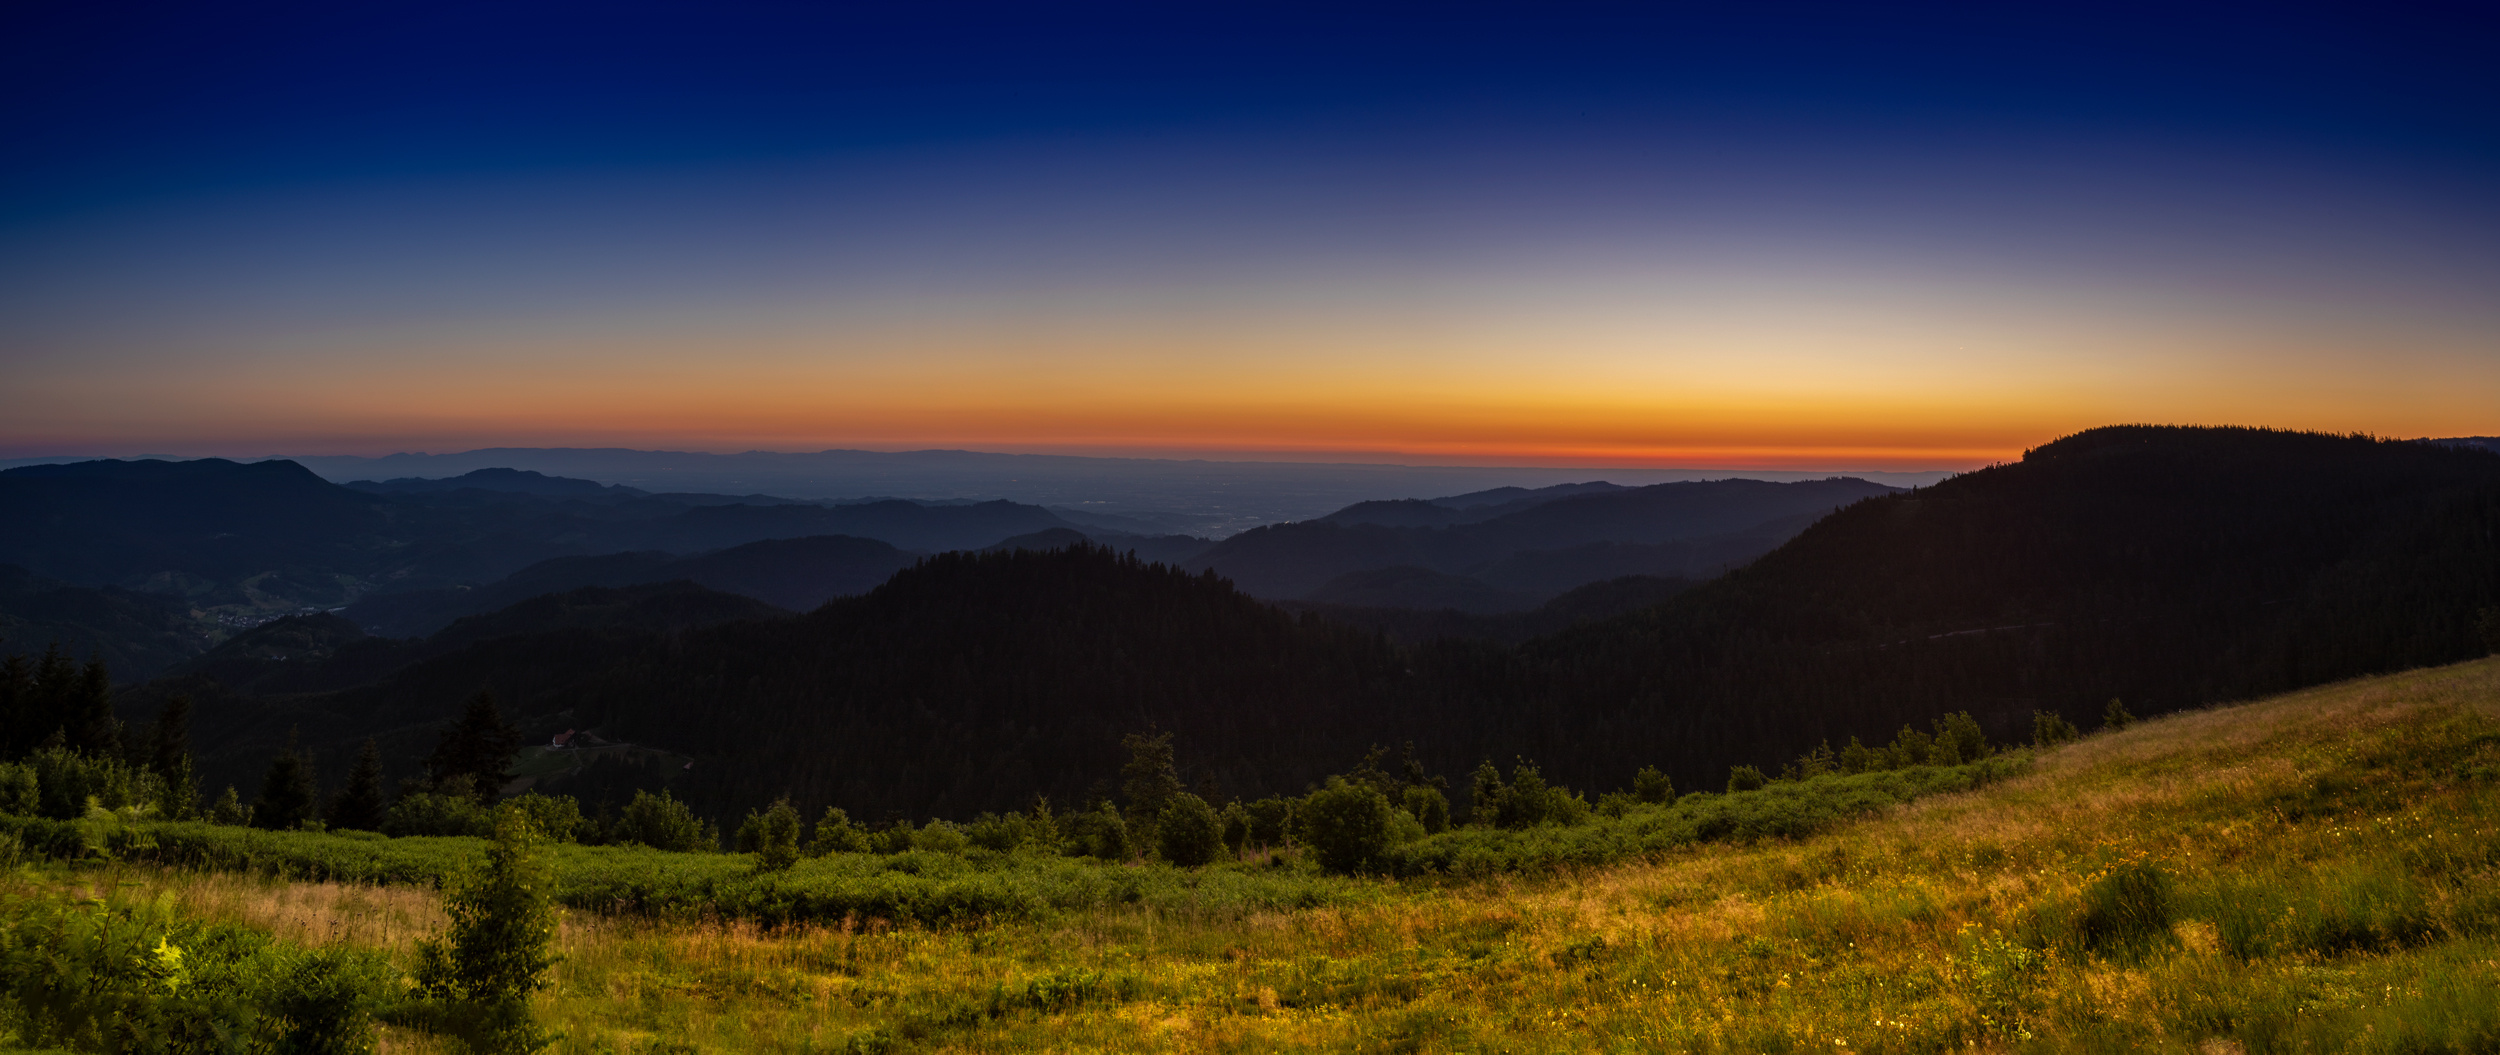 Ein Sonnenuntergang im Schwarzwald